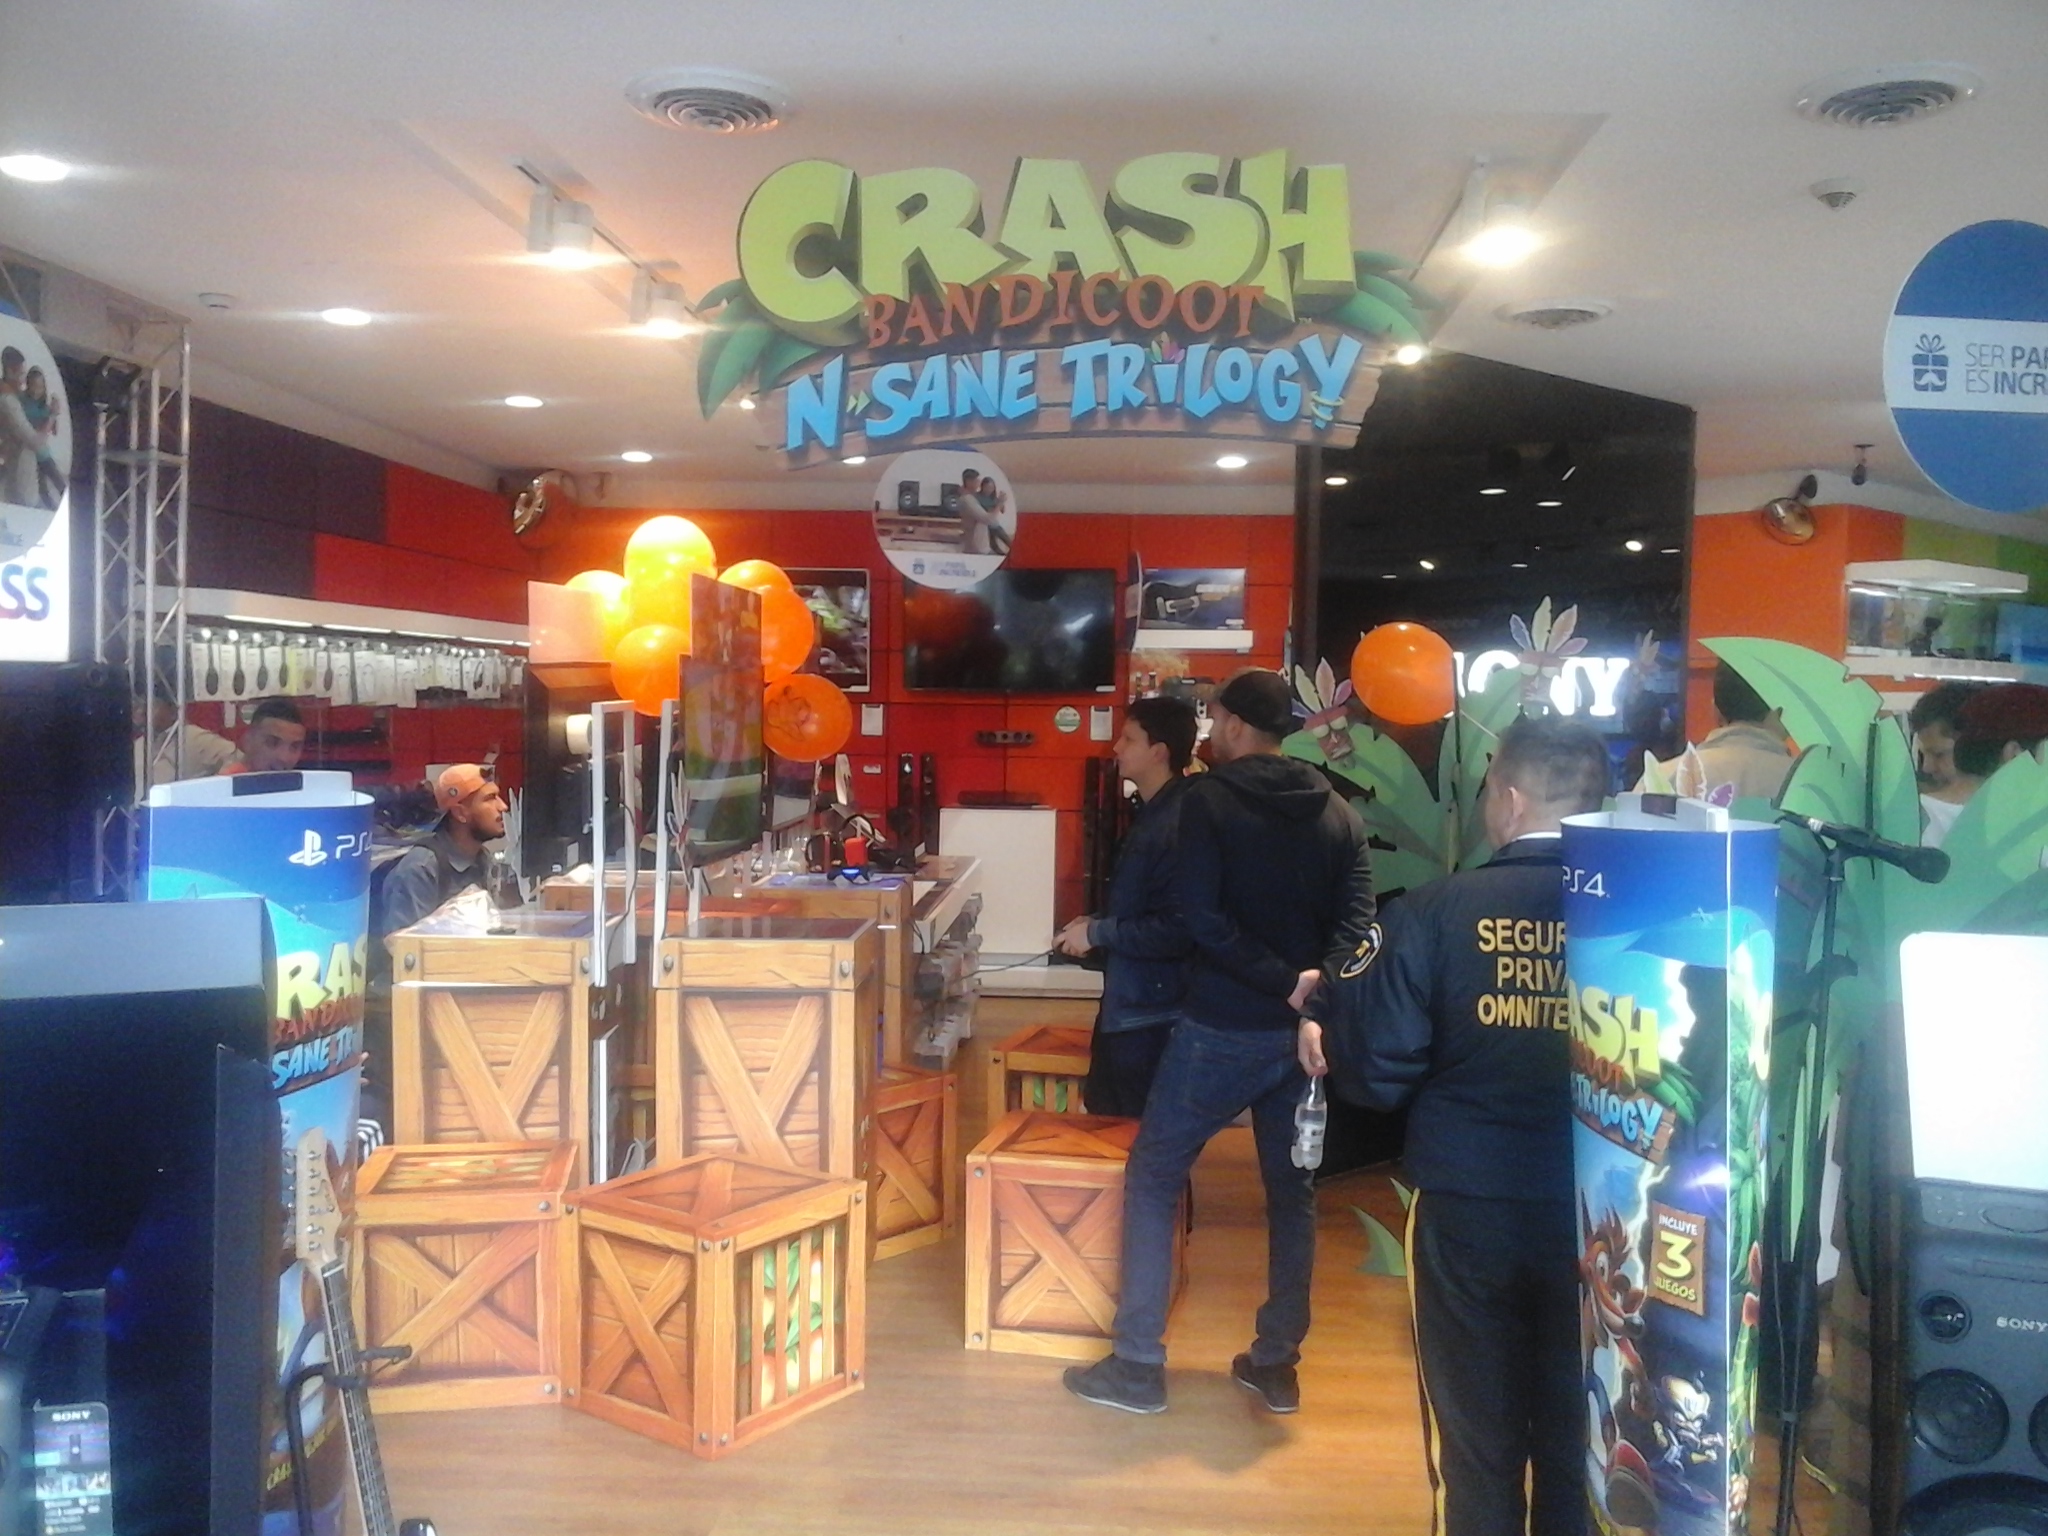 Crash Bandicoot N'Sane Trilogy